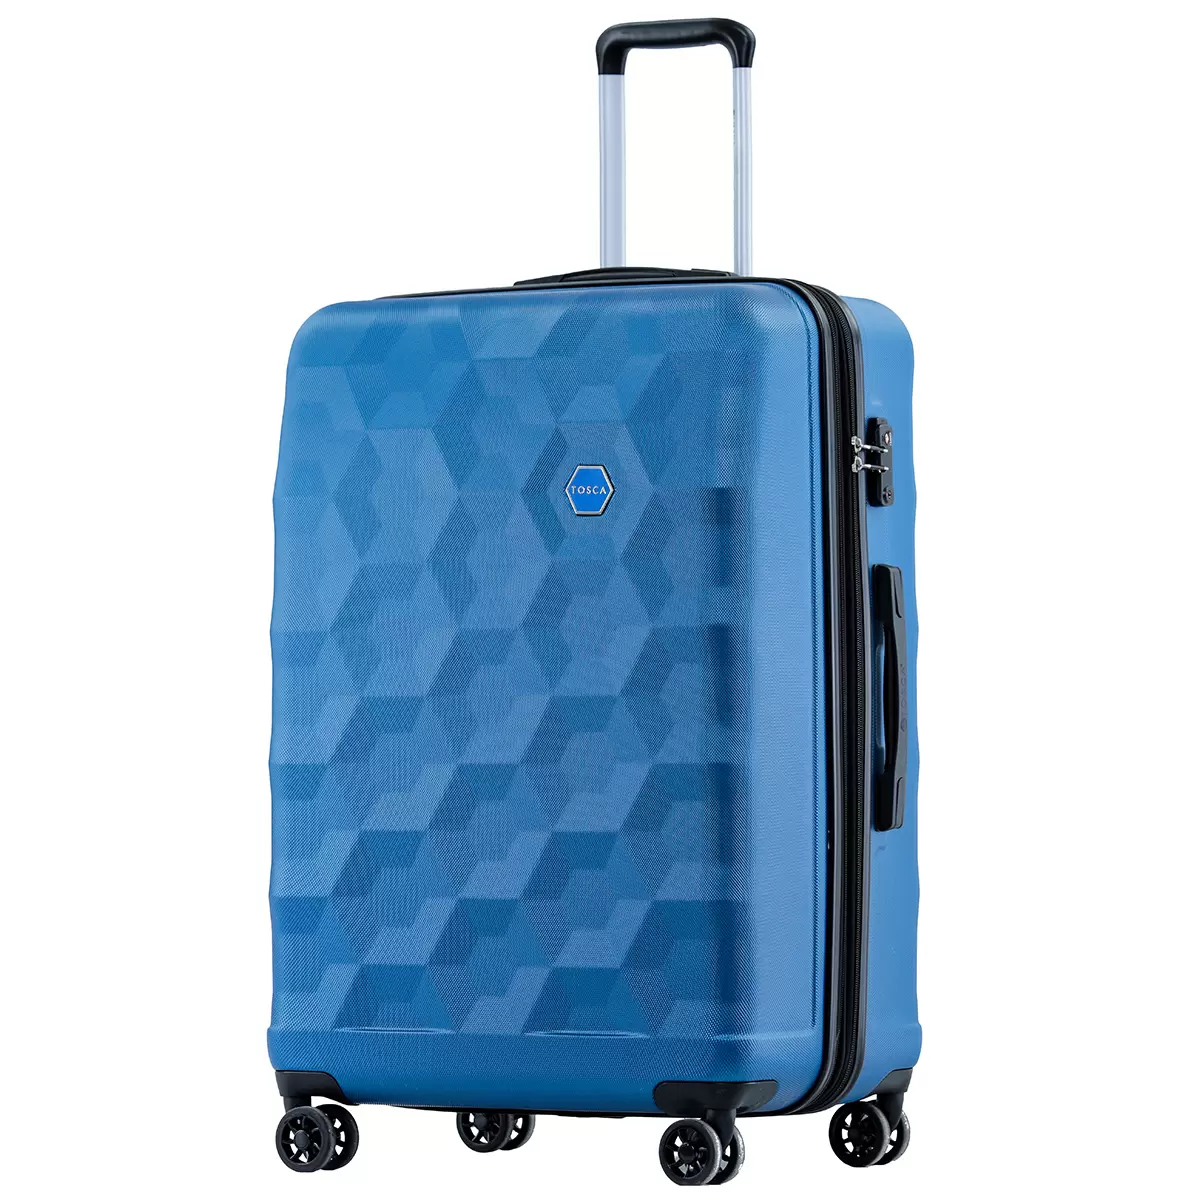 Tosca Bahamas Luggage 74cm Blue